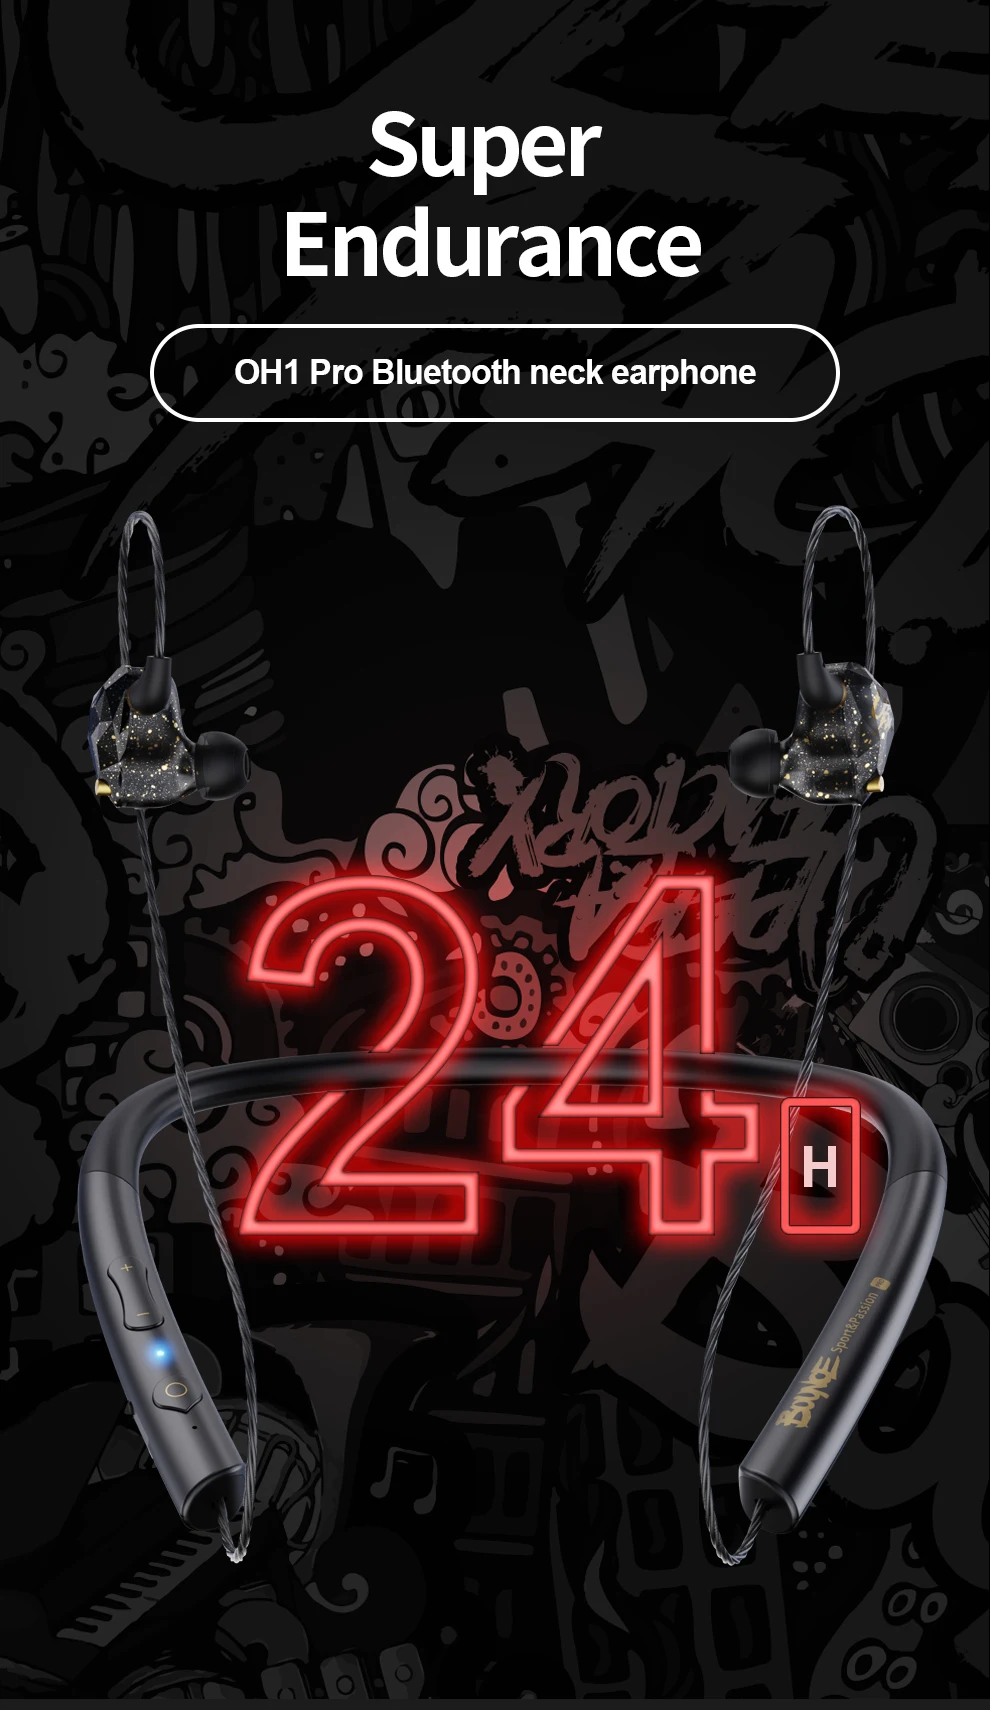 OHPRO беспроводные Bluetooth наушники Спортивная гарнитура HiFi стерео Внутриканальные наушники для телефонов Xiaomi iPhone samsung